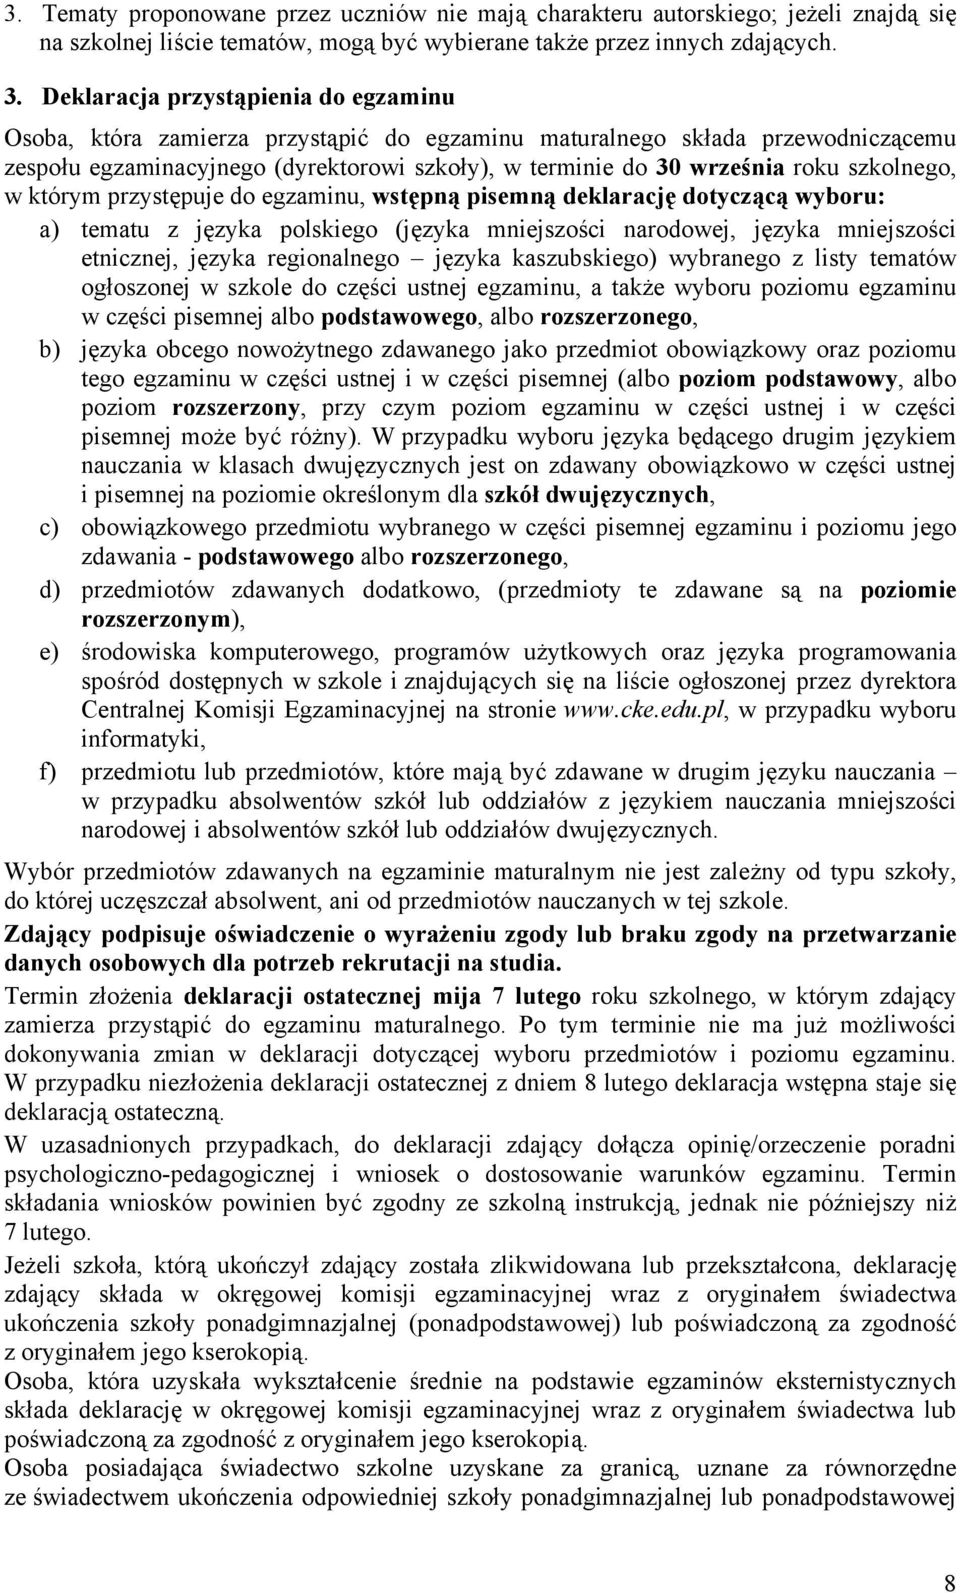 szkolnego, w którym przystępuje do egzaminu, wstępną pisemną deklarację dotyczącą wyboru: a) tematu z języka polskiego (języka mniejszości narodowej, języka mniejszości etnicznej, języka regionalnego